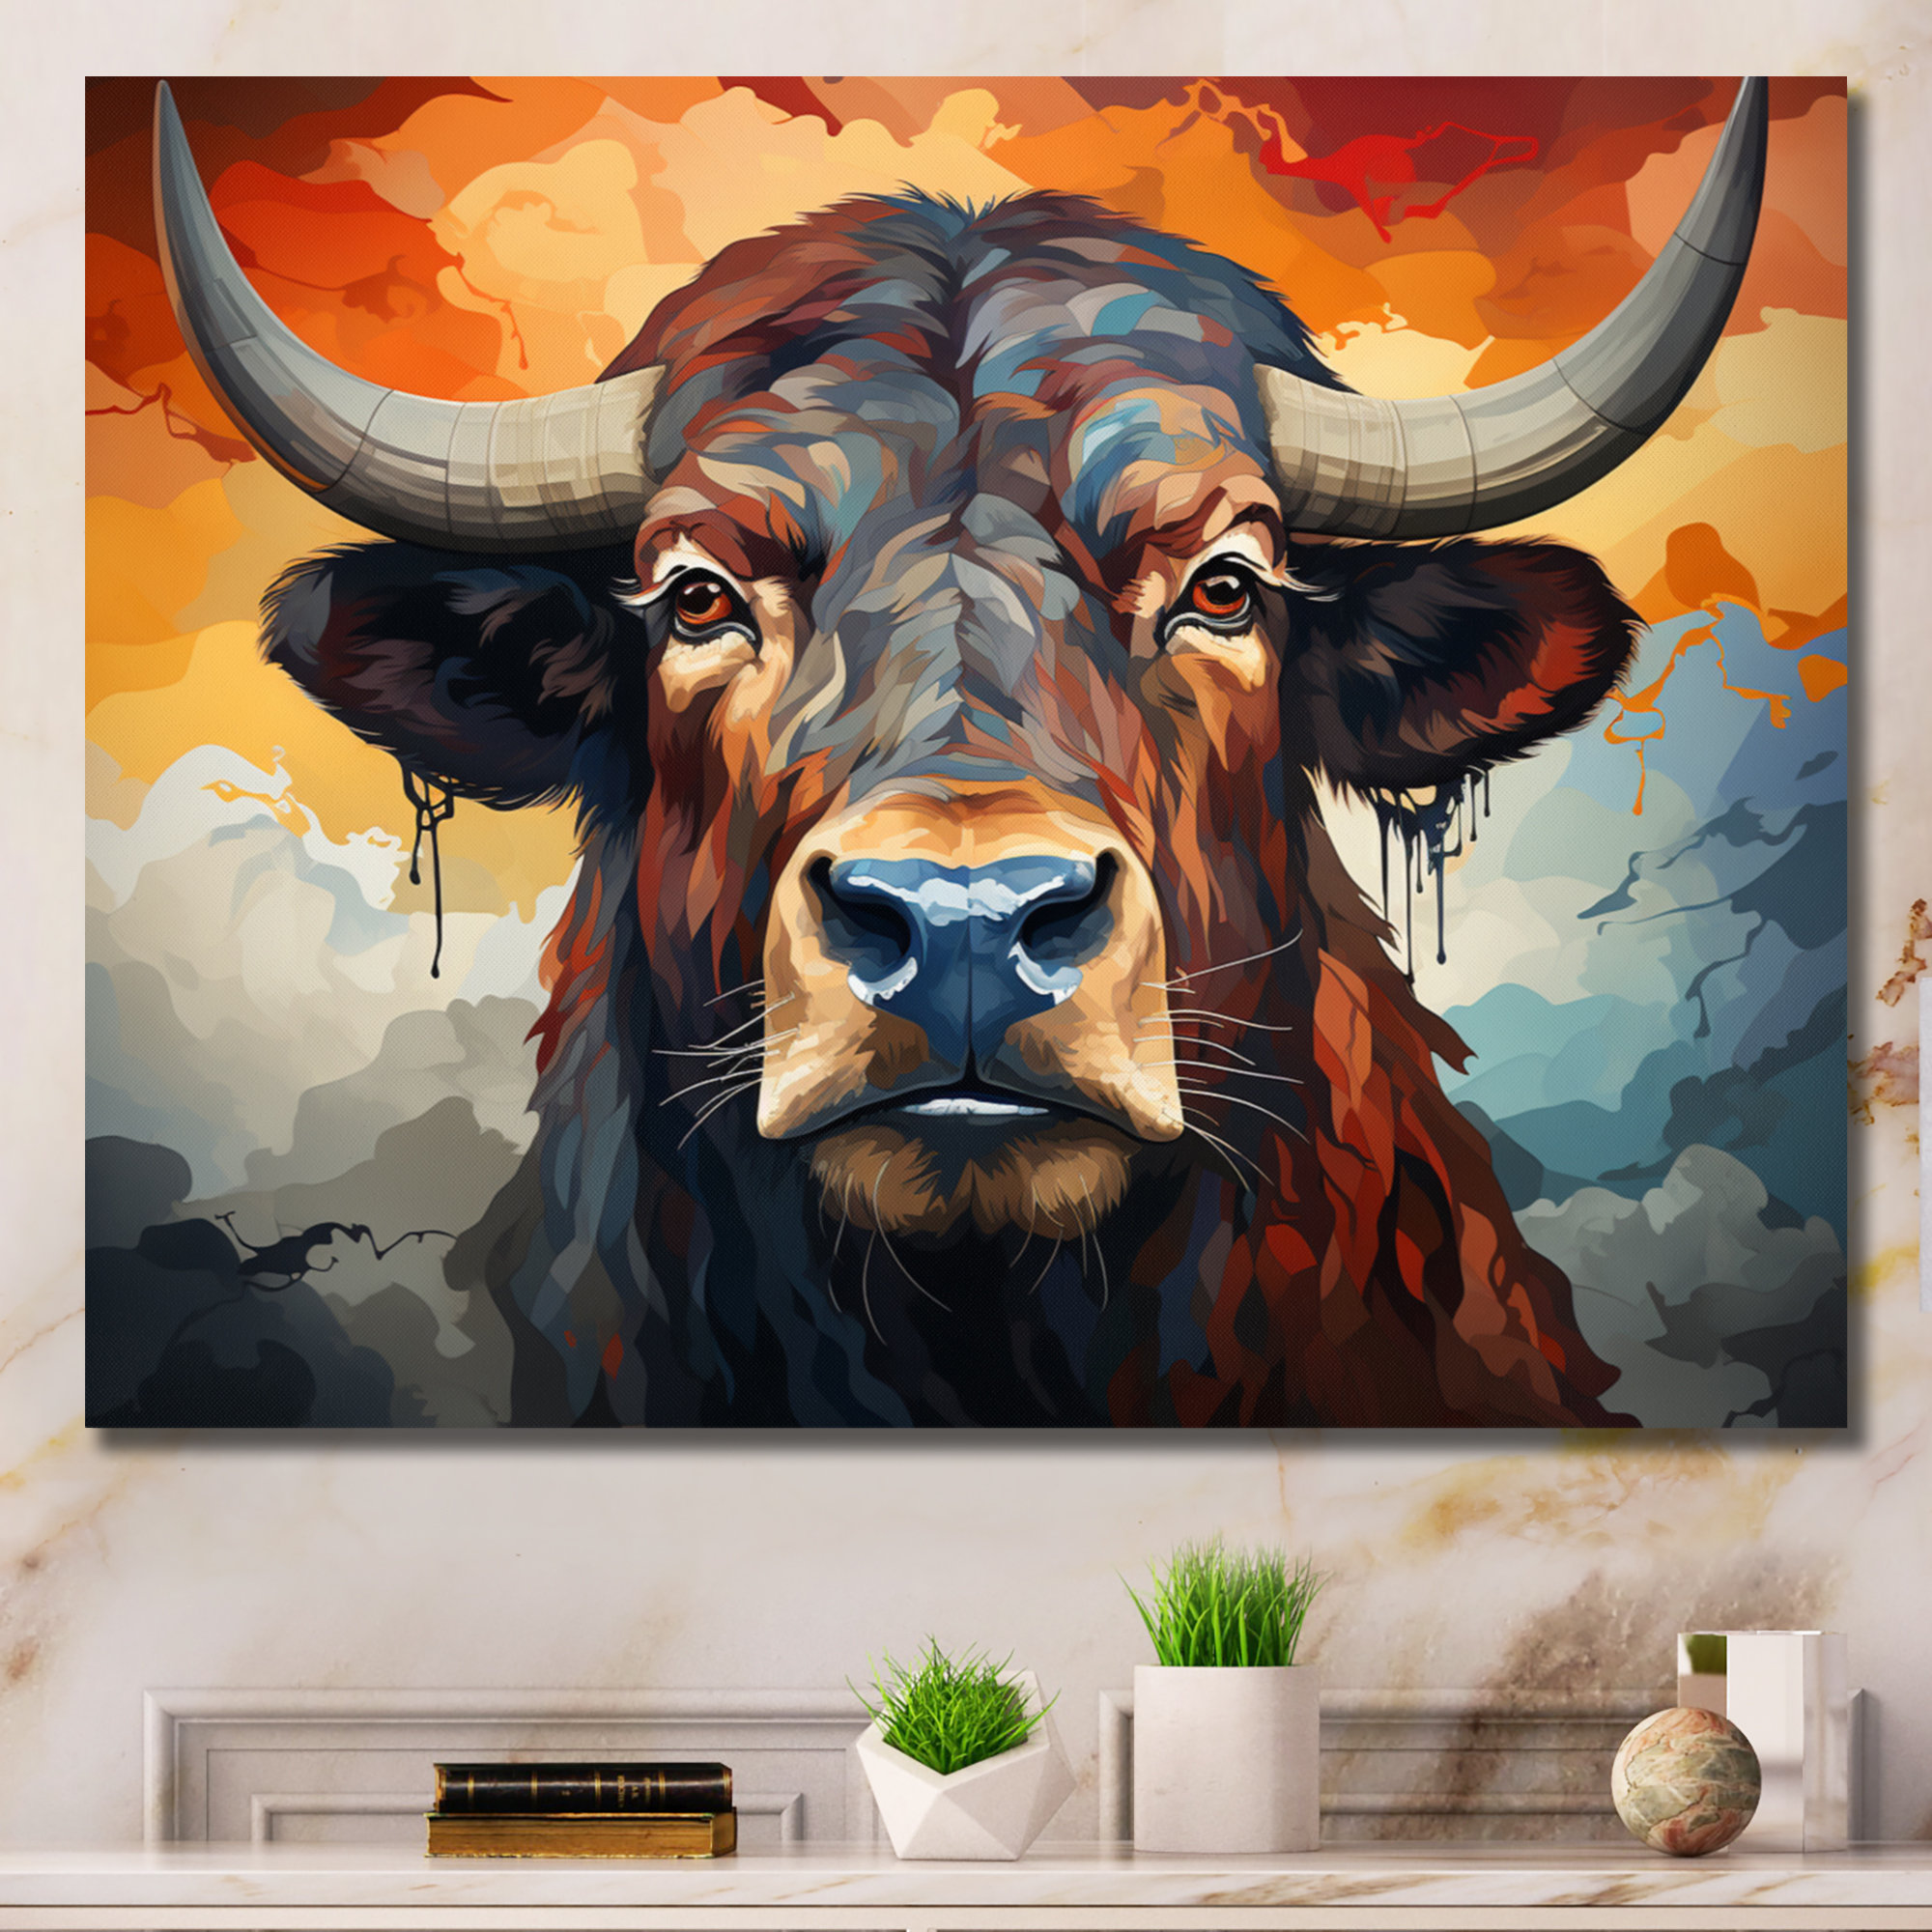 The Majestic Buffalo